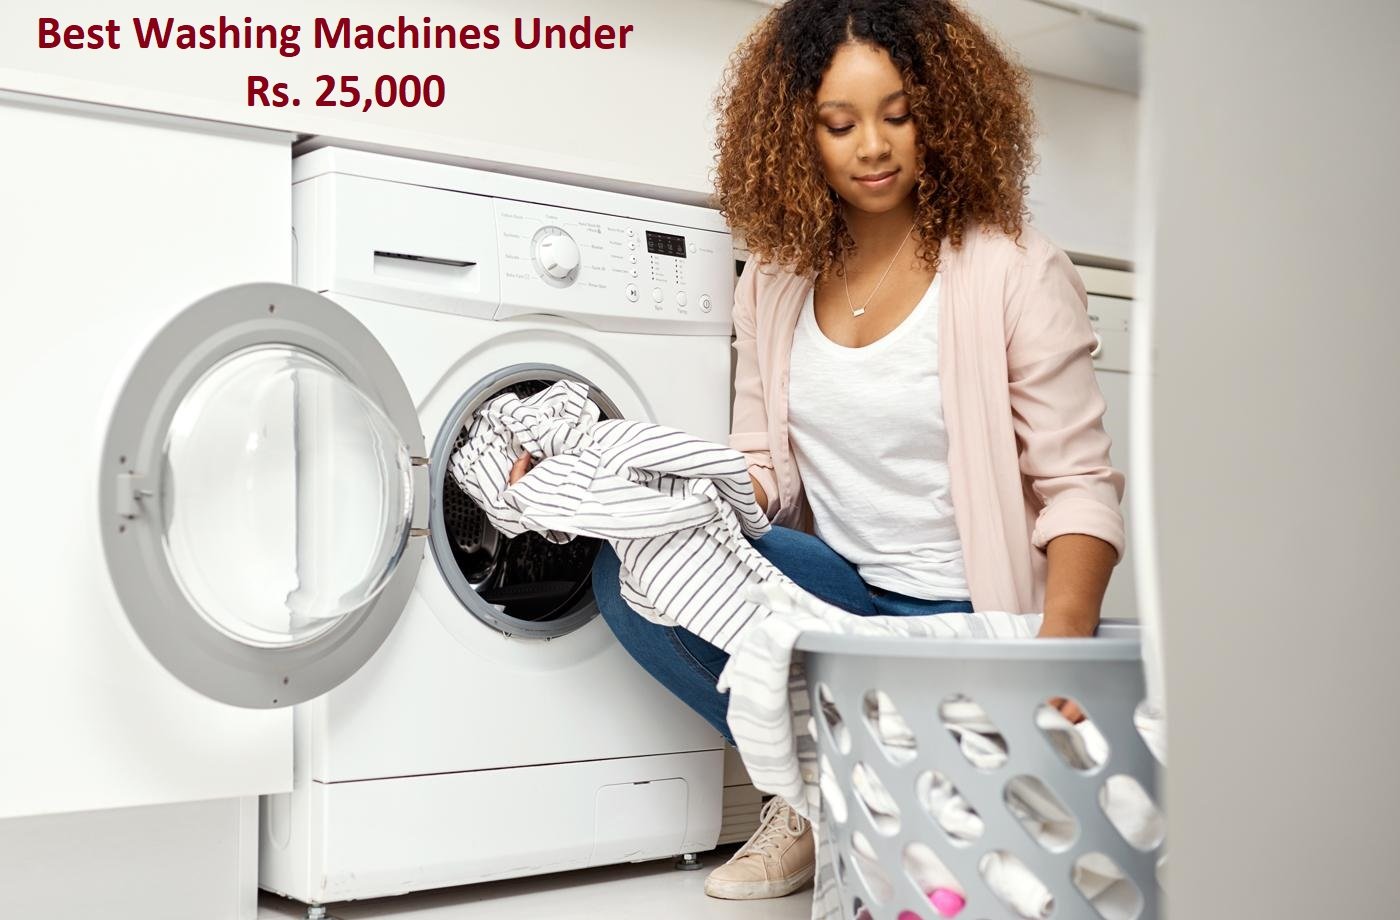 Best Washing Machines under 25,000